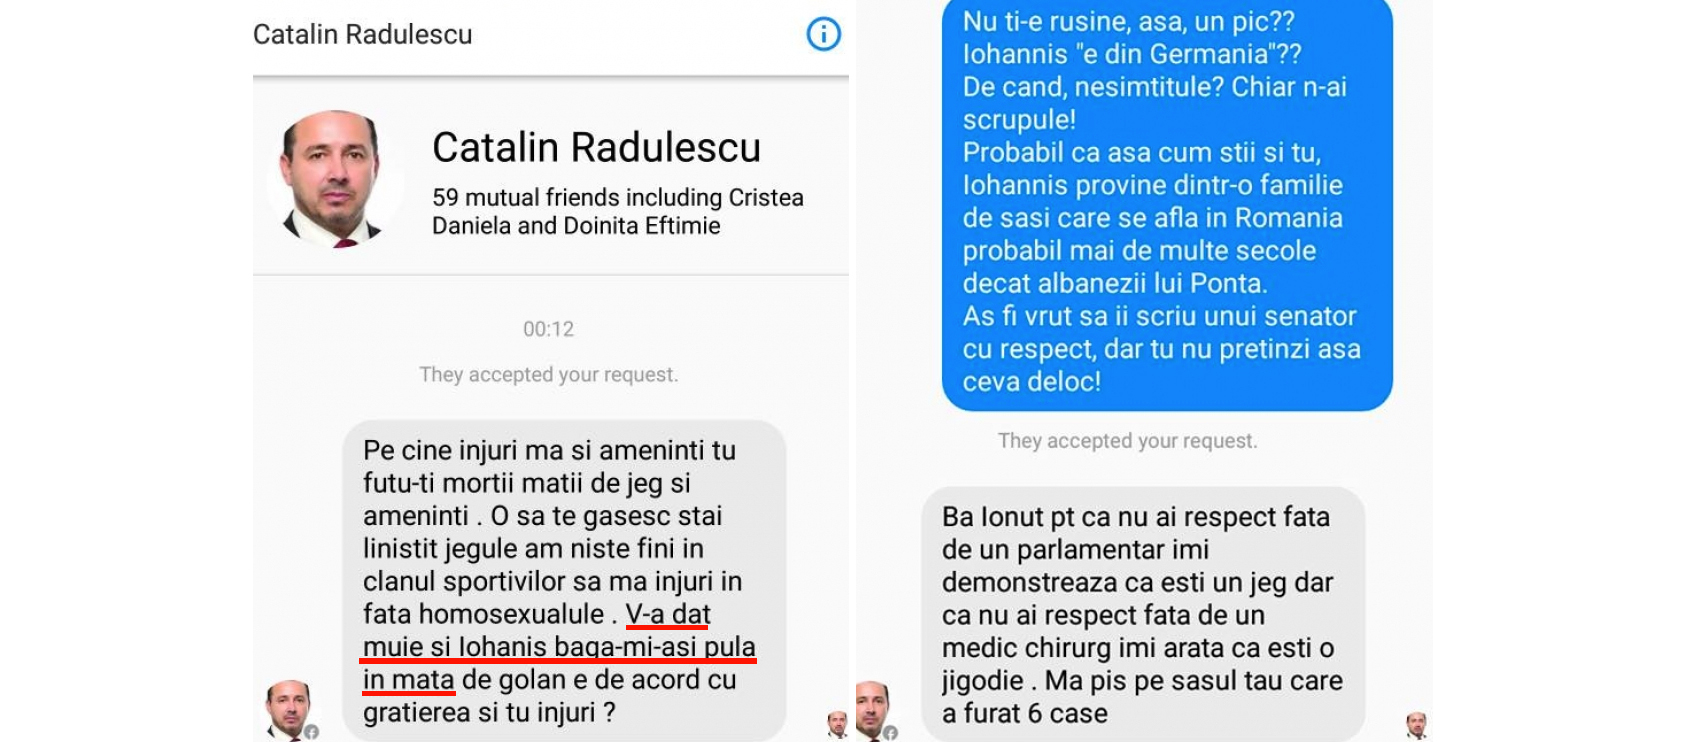 Cătălin Rădulescu, parlamentar și agramat: azi vă înjură, mâine poate vă și mitraliază!